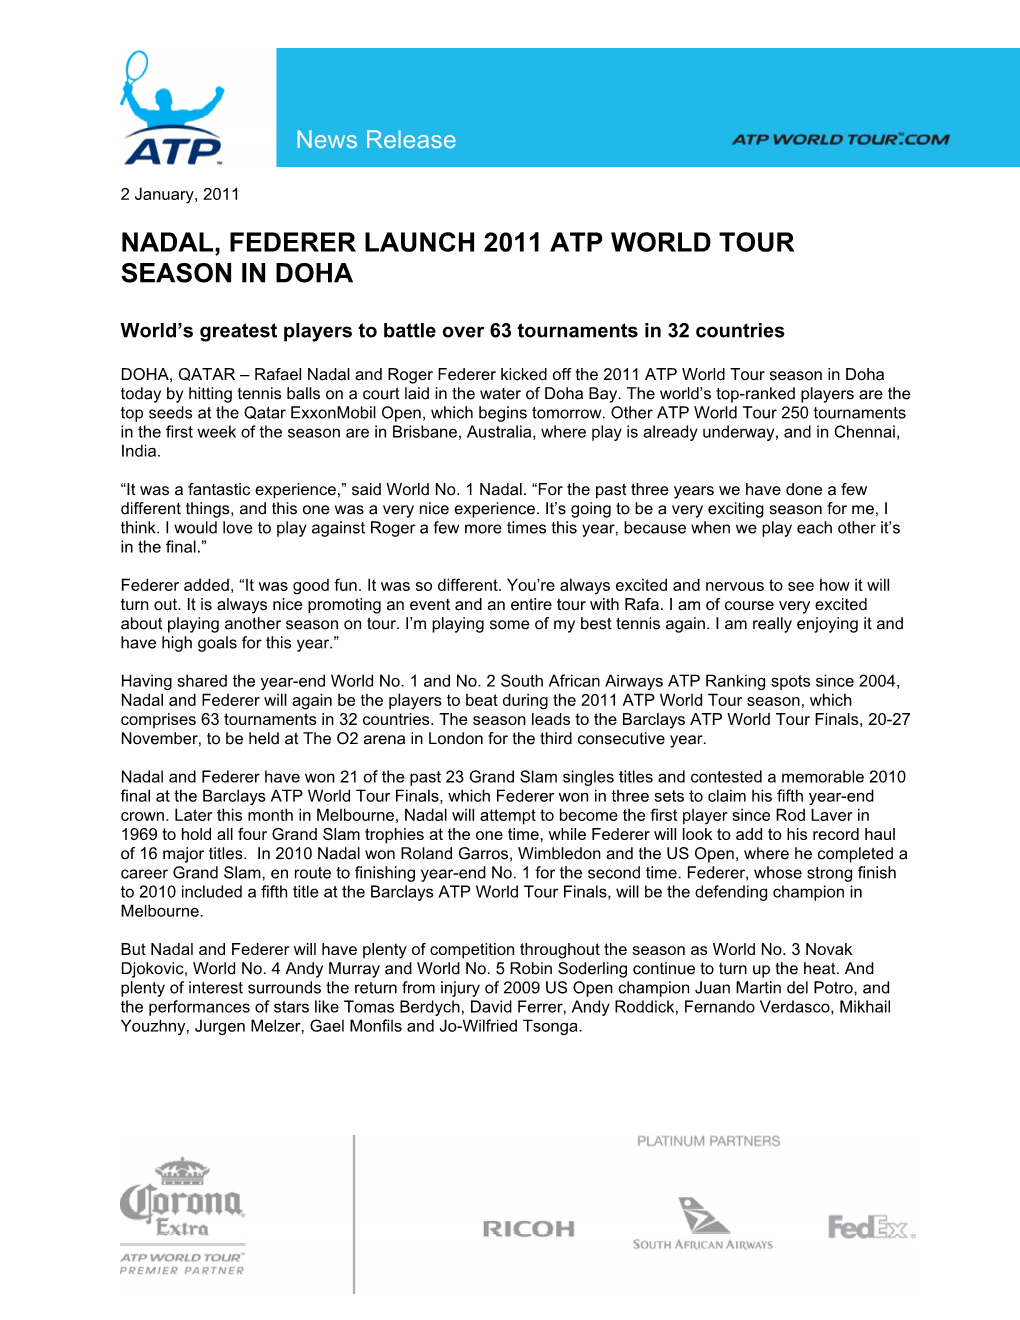 Nadal, Federer Launch 2011 Atp World Tour Season in Doha